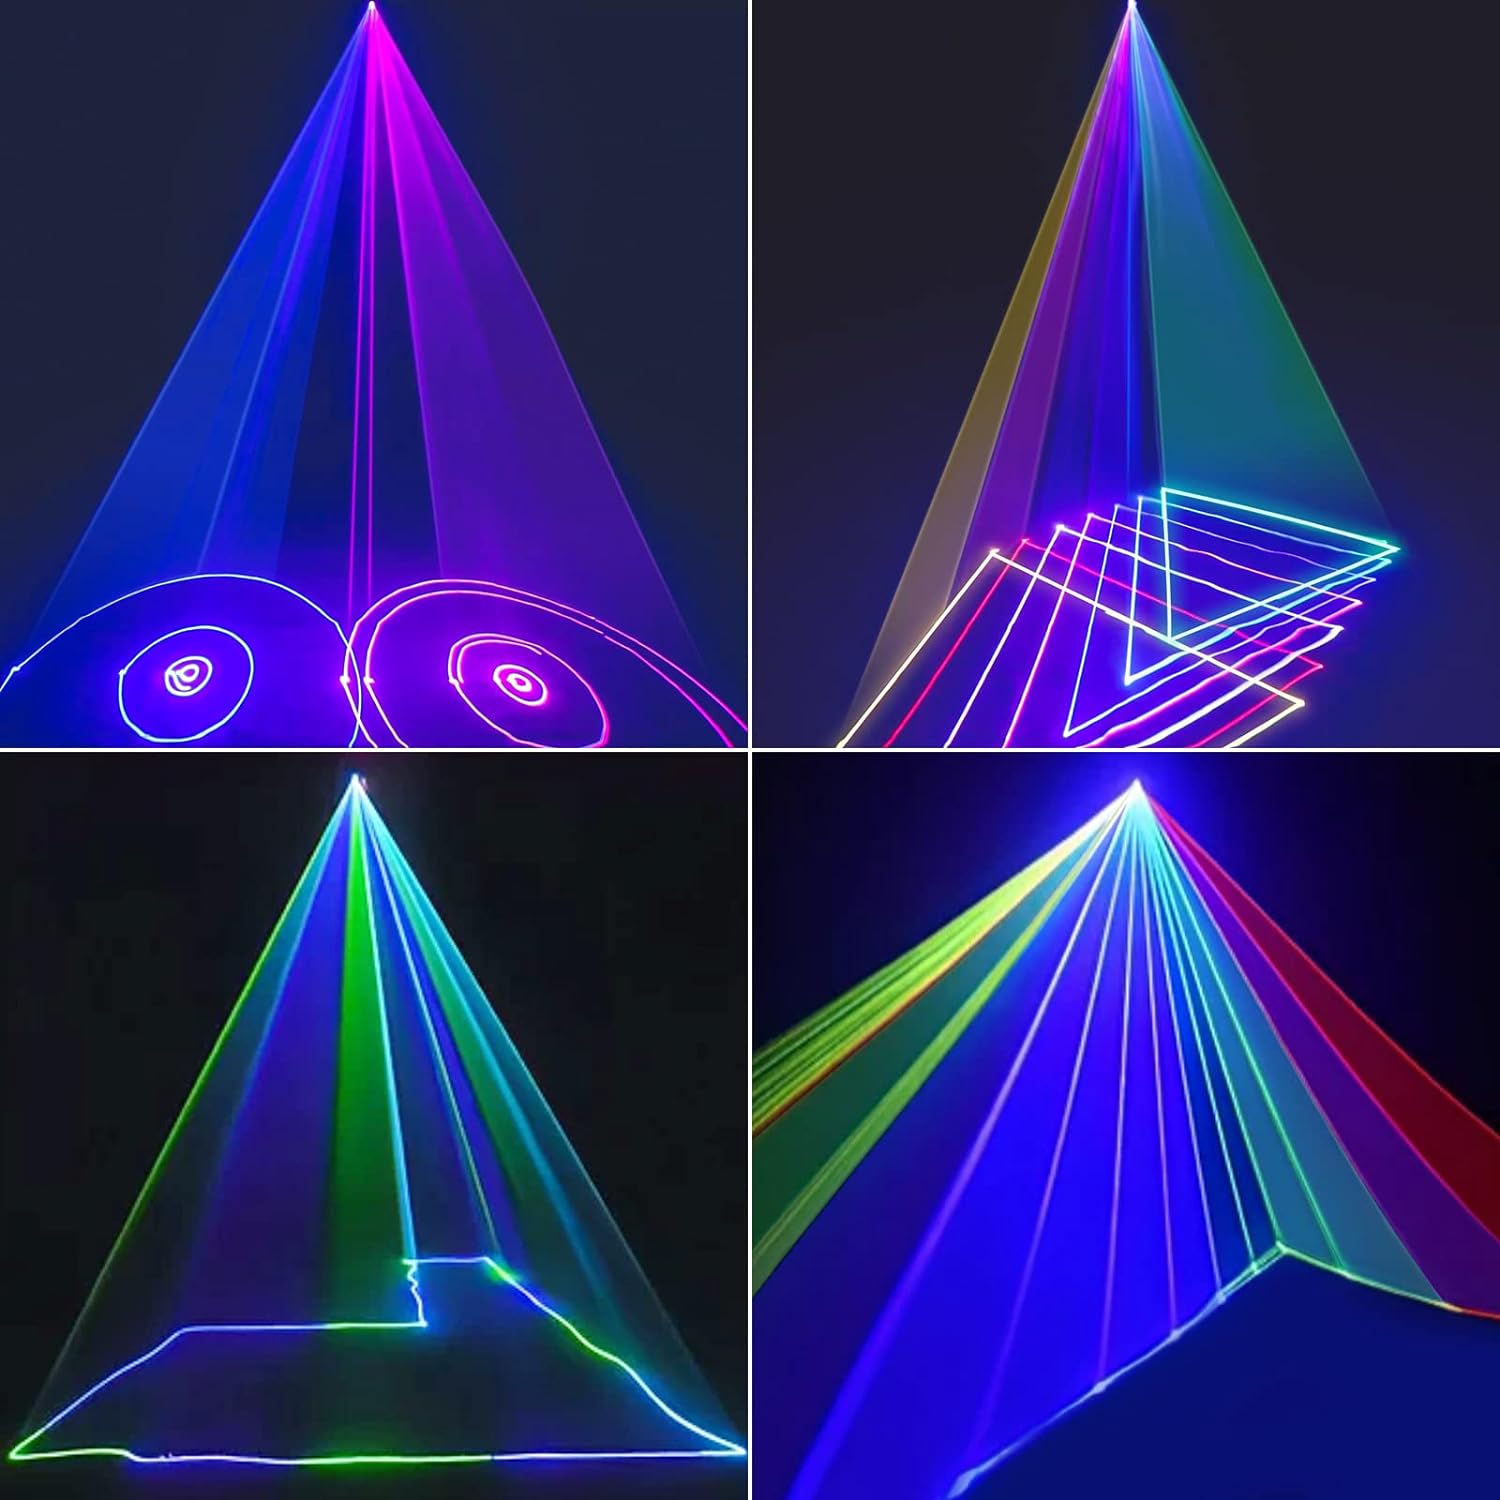 Ehaho L2600 3D DJ Laser Party Lights